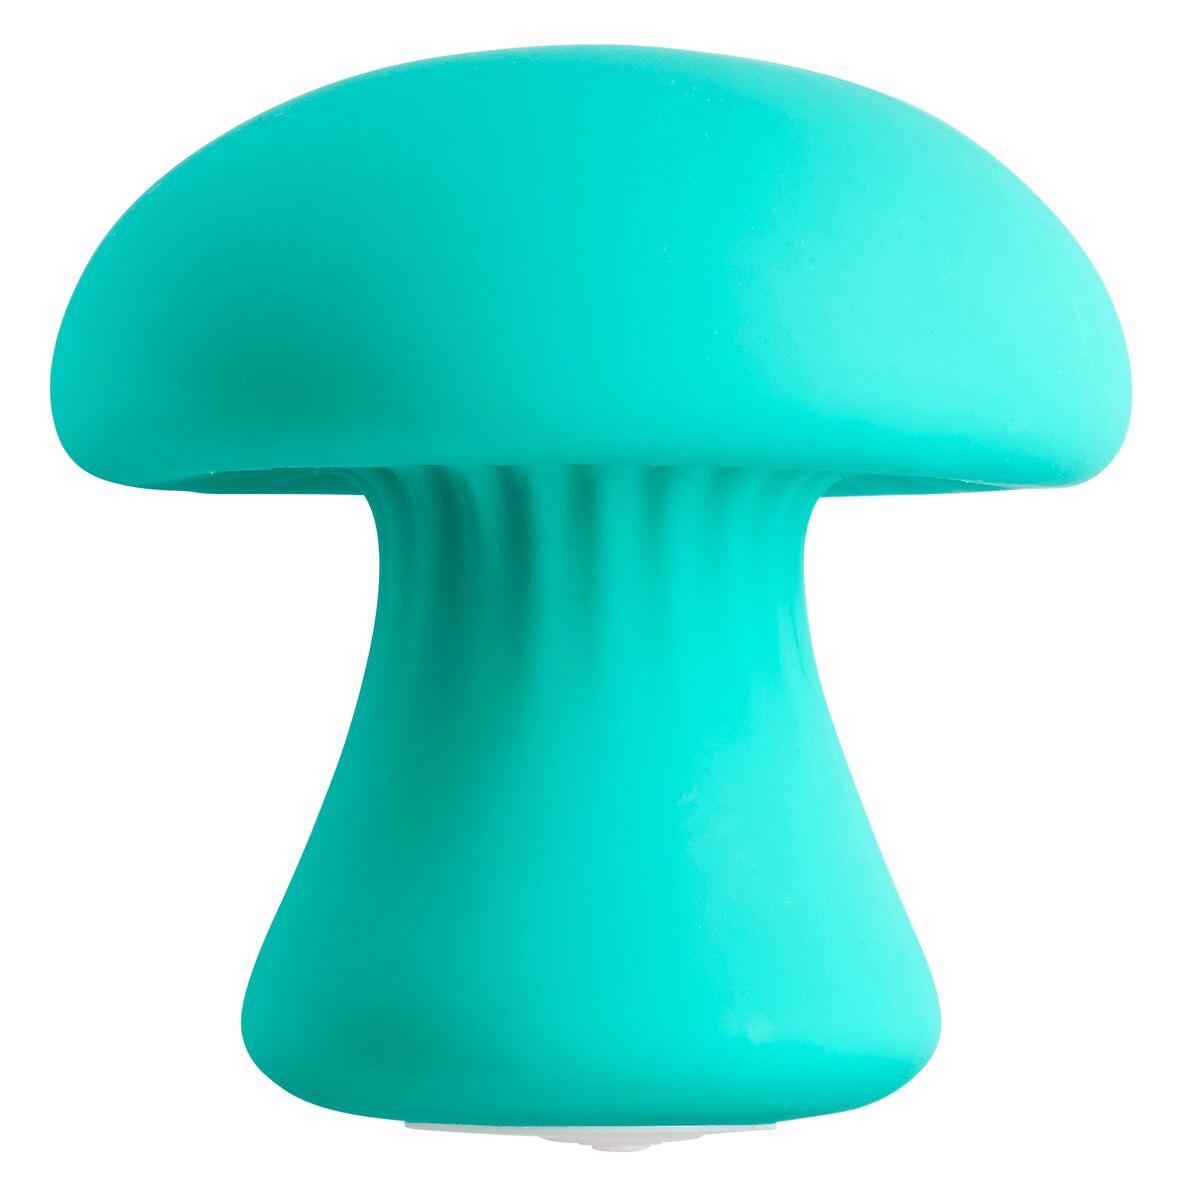 Cloud 9 Mushroom Massager |  mushroom massager